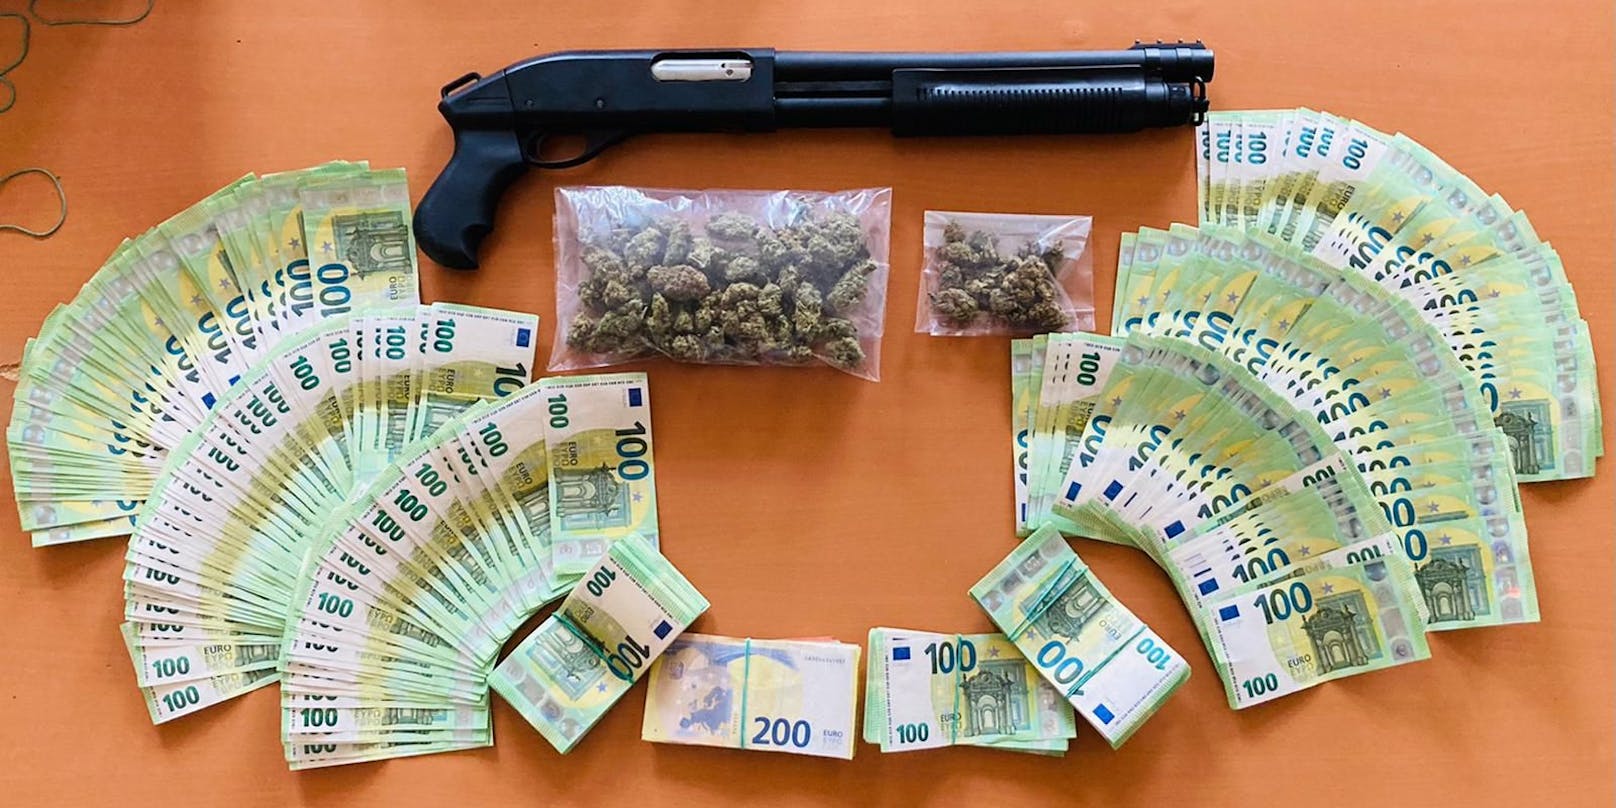 Ca. 120 Gramm Marihuana, etwas über € 48.800,- Bargeld und die CO2-mindergefährliche Schusswaffe („Pumpgun“)